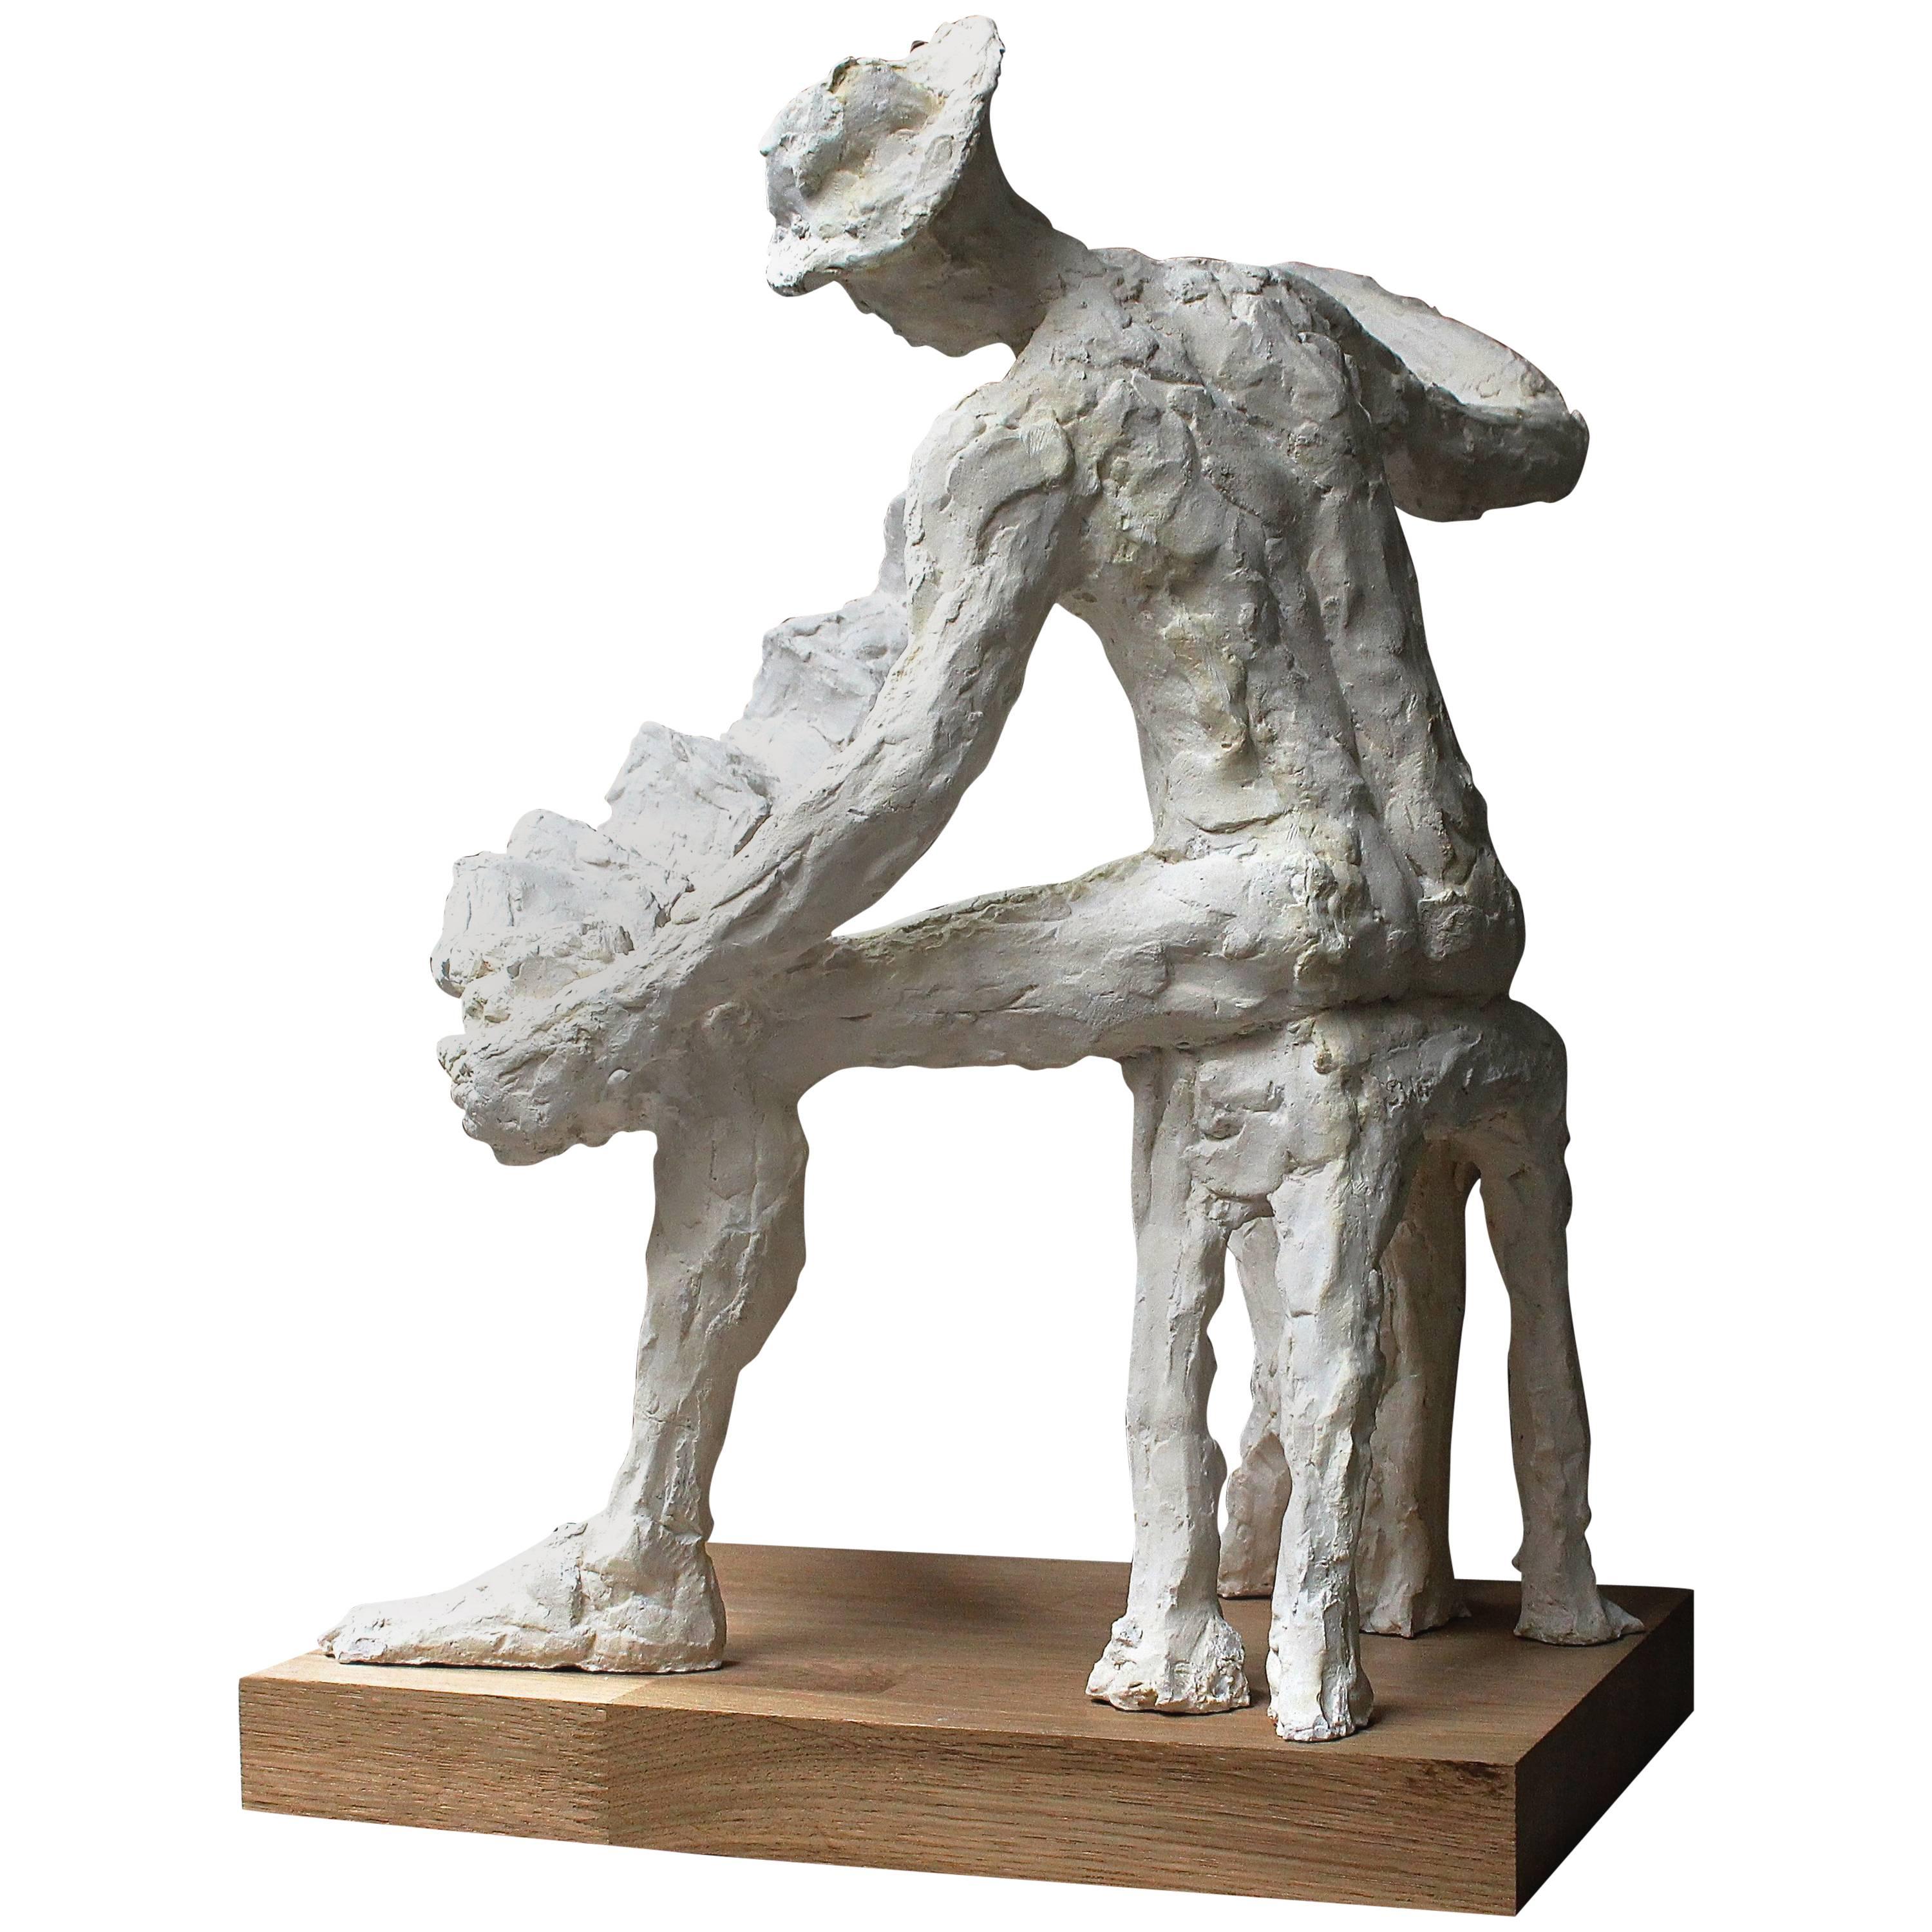 Sidonie Laurens, 1st Prize Grand Palais, Sculpture, Paris, France